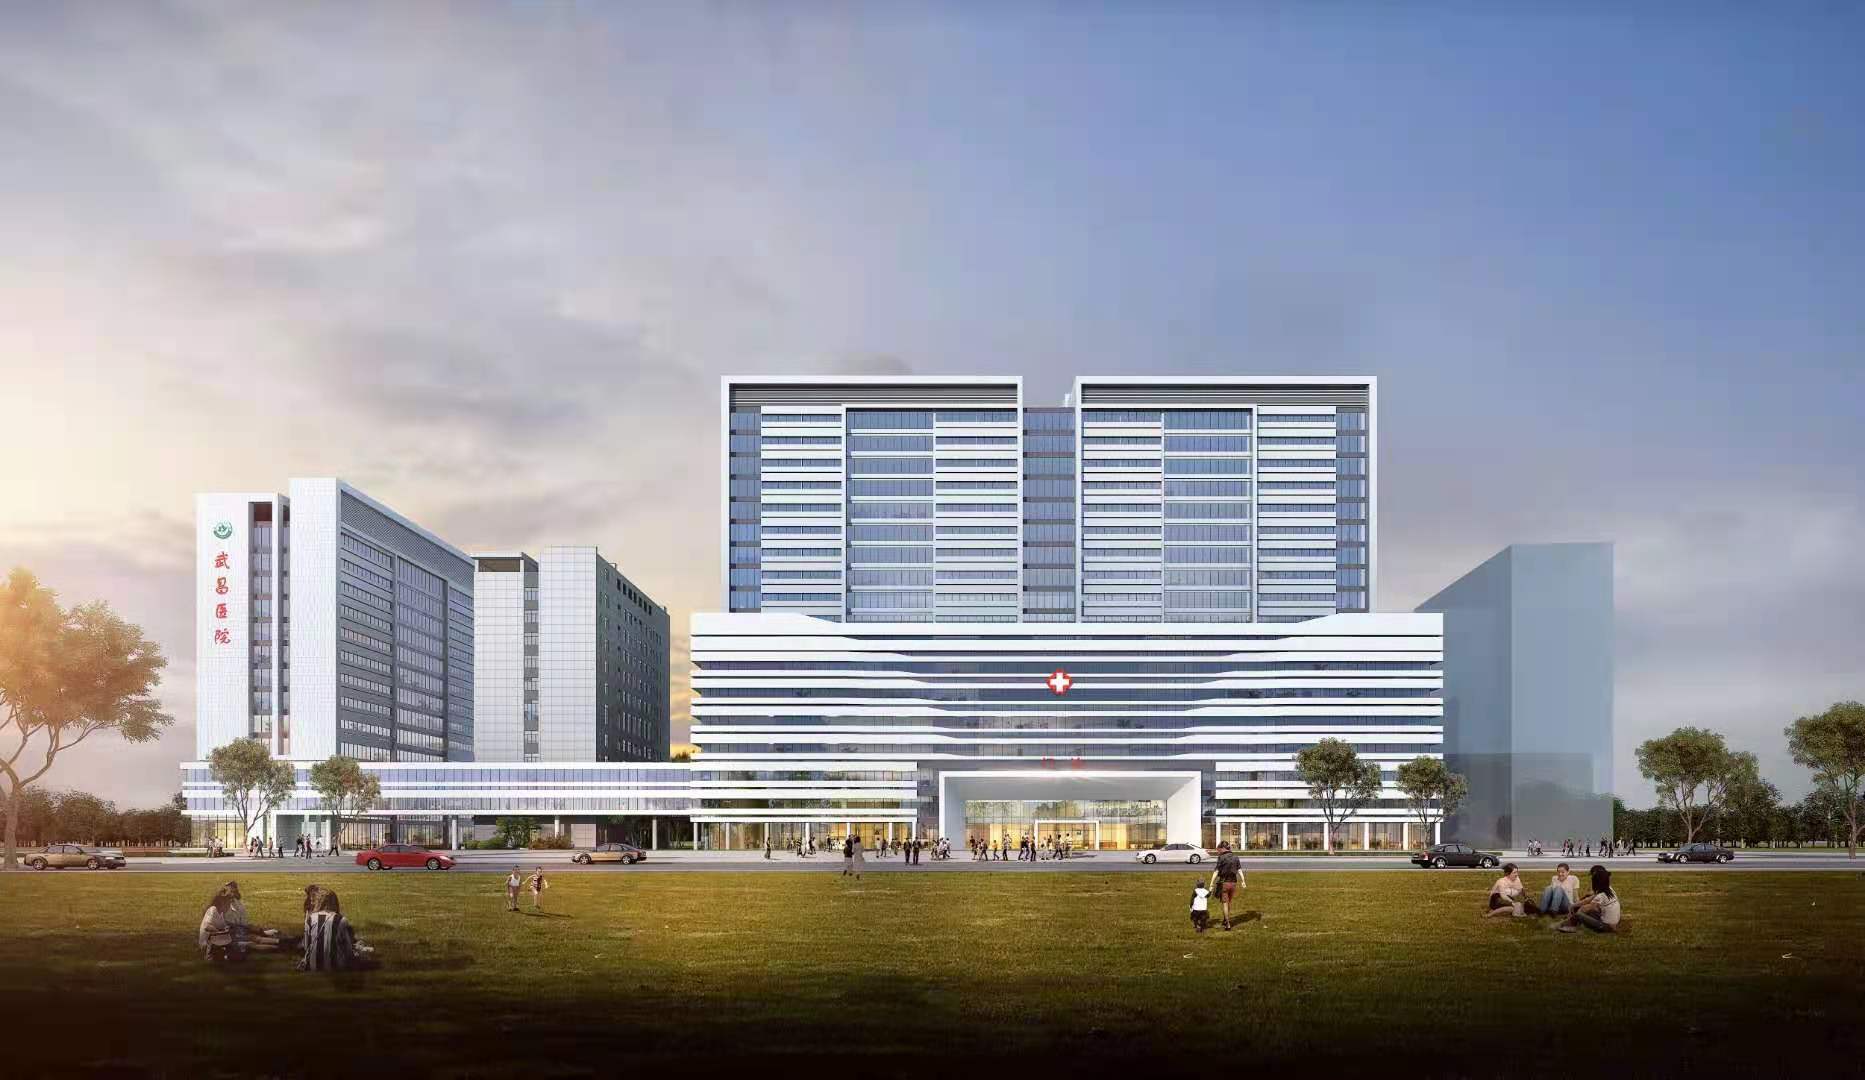 图为武汉市武昌医院新大楼效果图今年,武汉和湖北经历了疫情的严峻